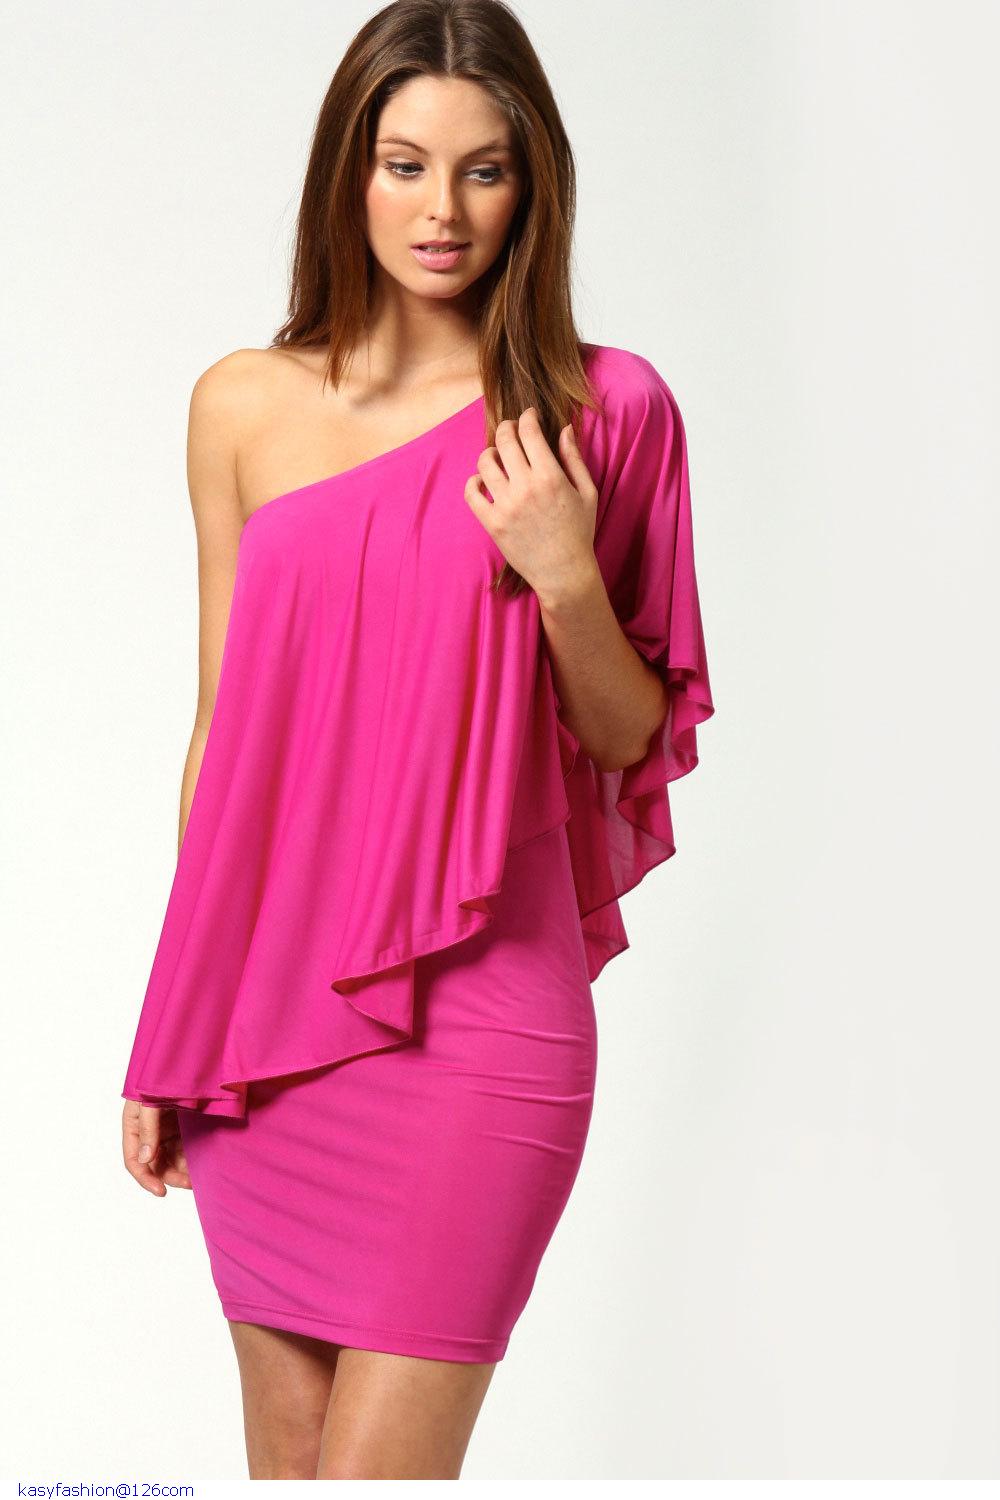 Pink One Shoulder Casual Dresses  Dress images